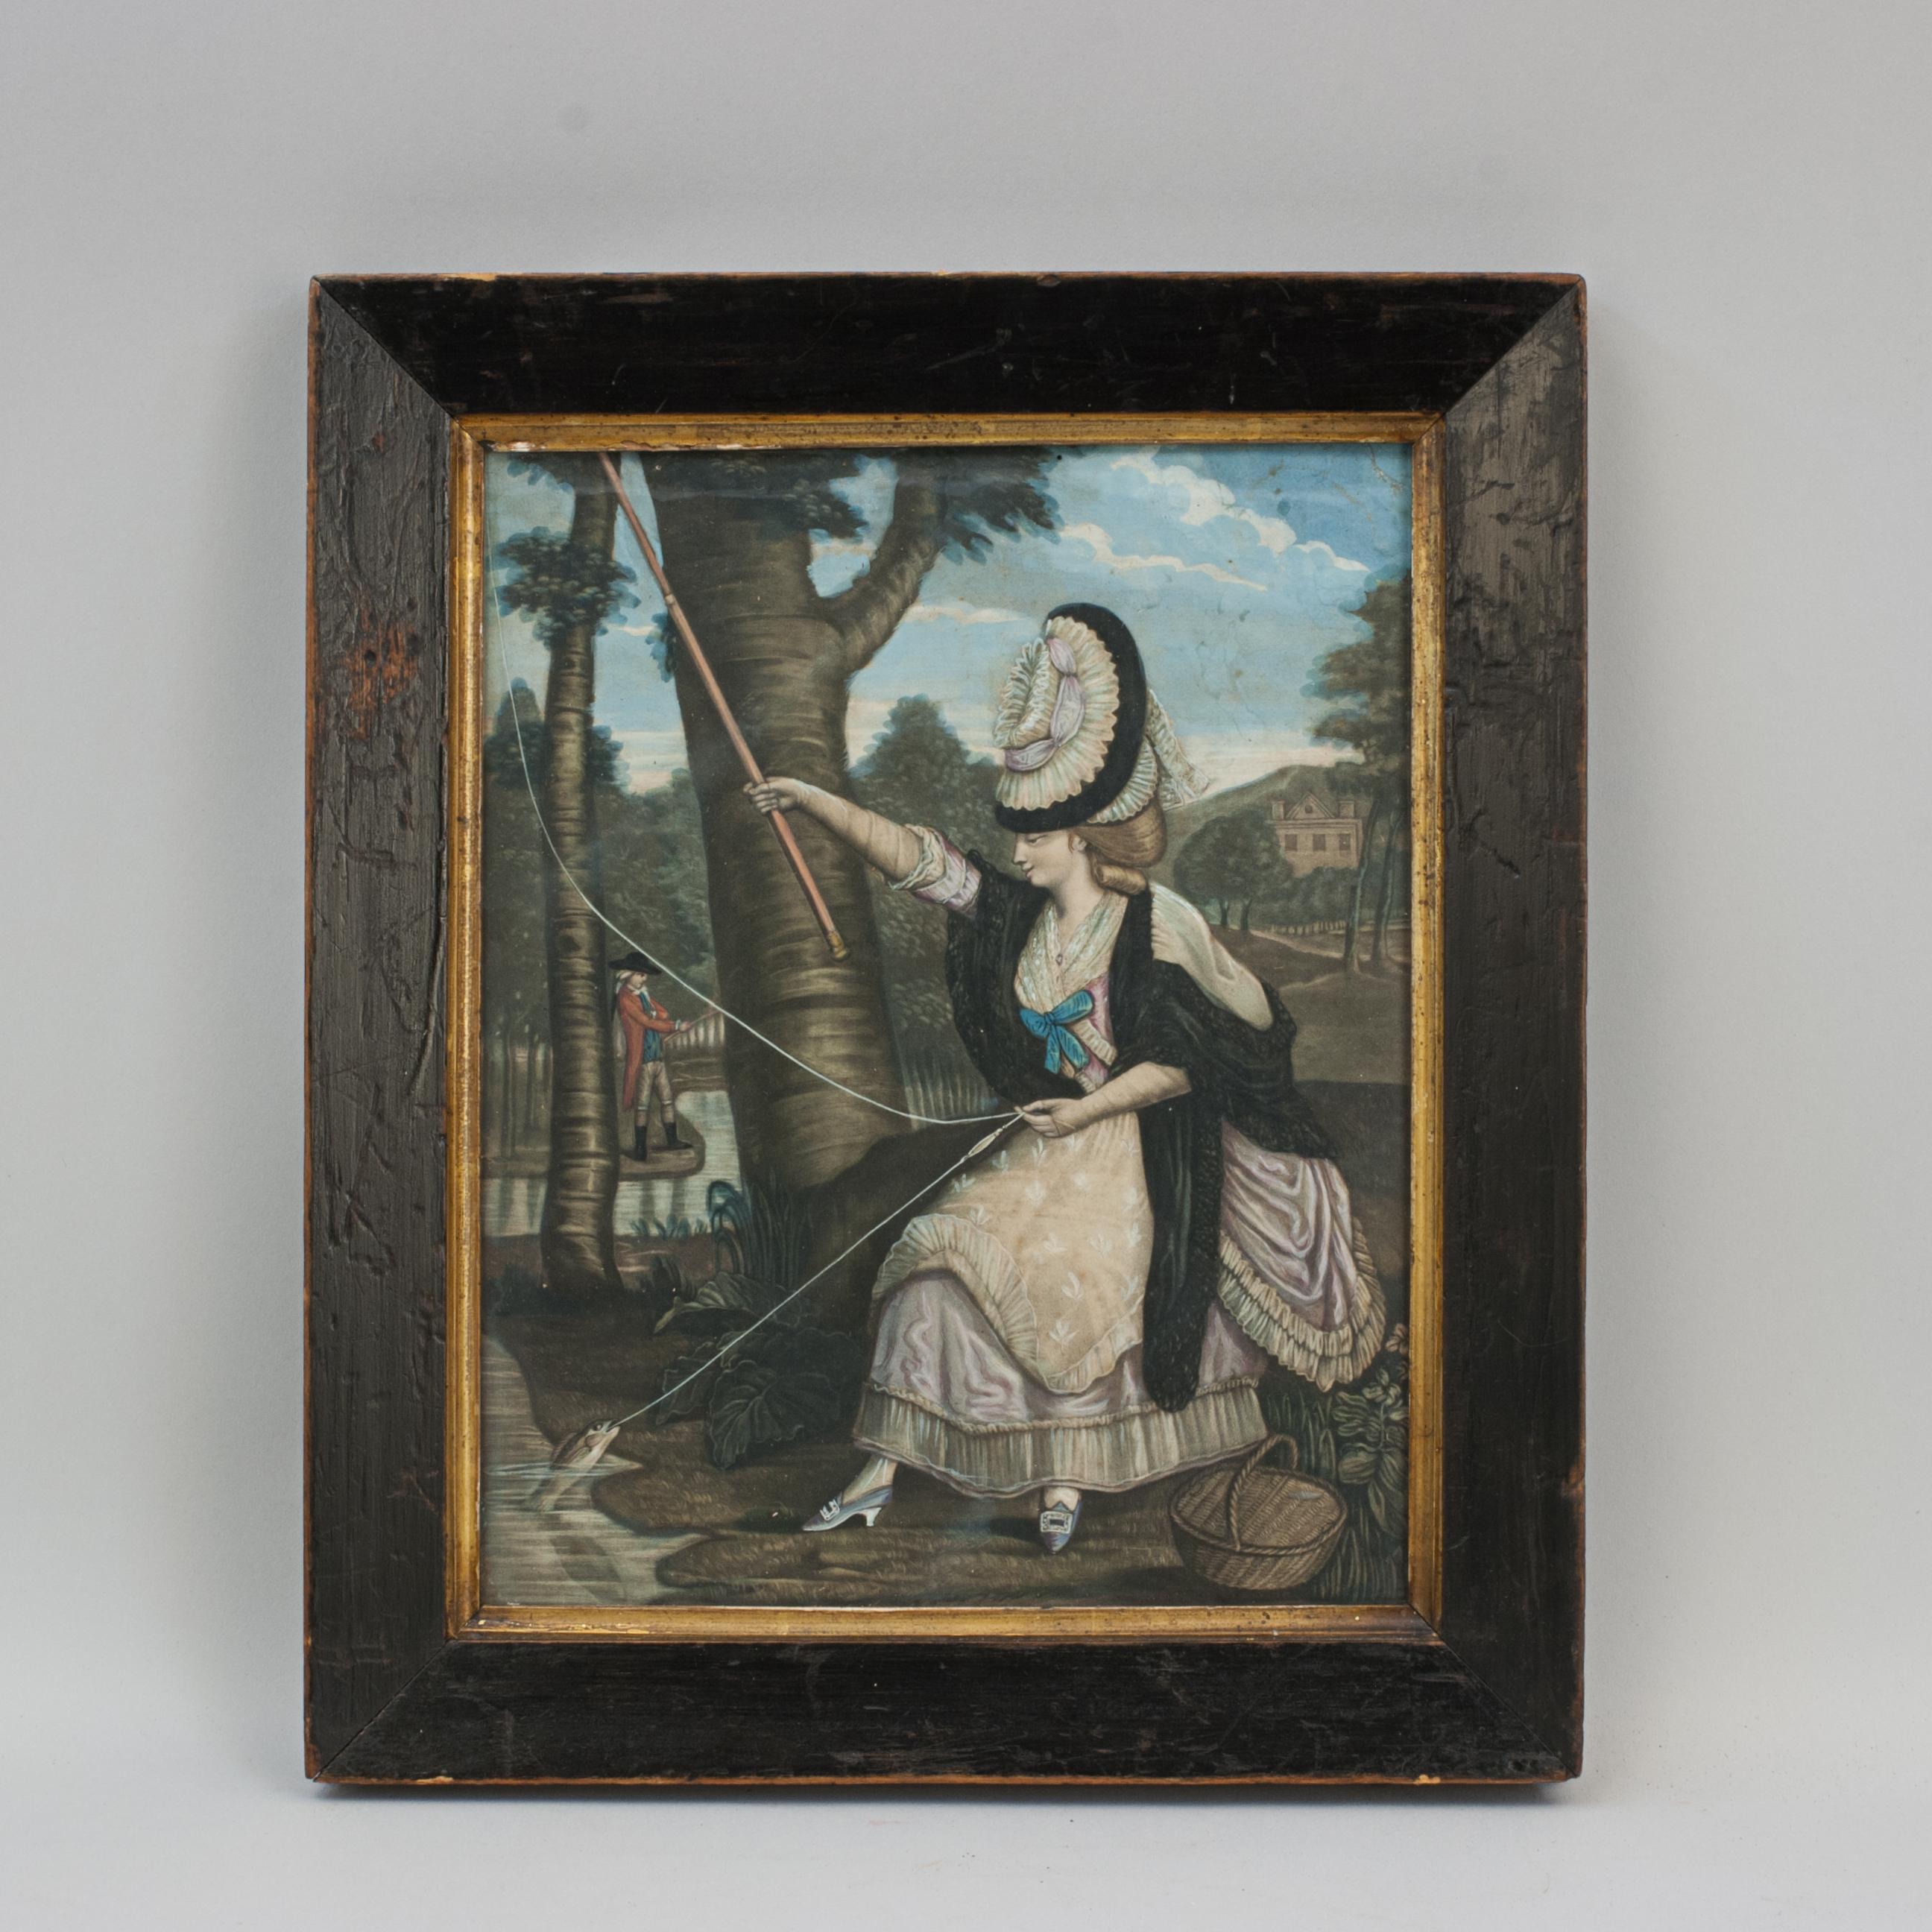 Frühes Fischerbild aus dem 18. Jahrhundert, Dame beim Fliegenfischen
Ein seltenes Fliegenfischerbild aus dem 18. Jahrhundert, das durch das Motiv einer Anglerin noch seltener wird. Sie hat einen Fisch gefangen und zieht ihn ans Ufer. Zu ihren Füßen